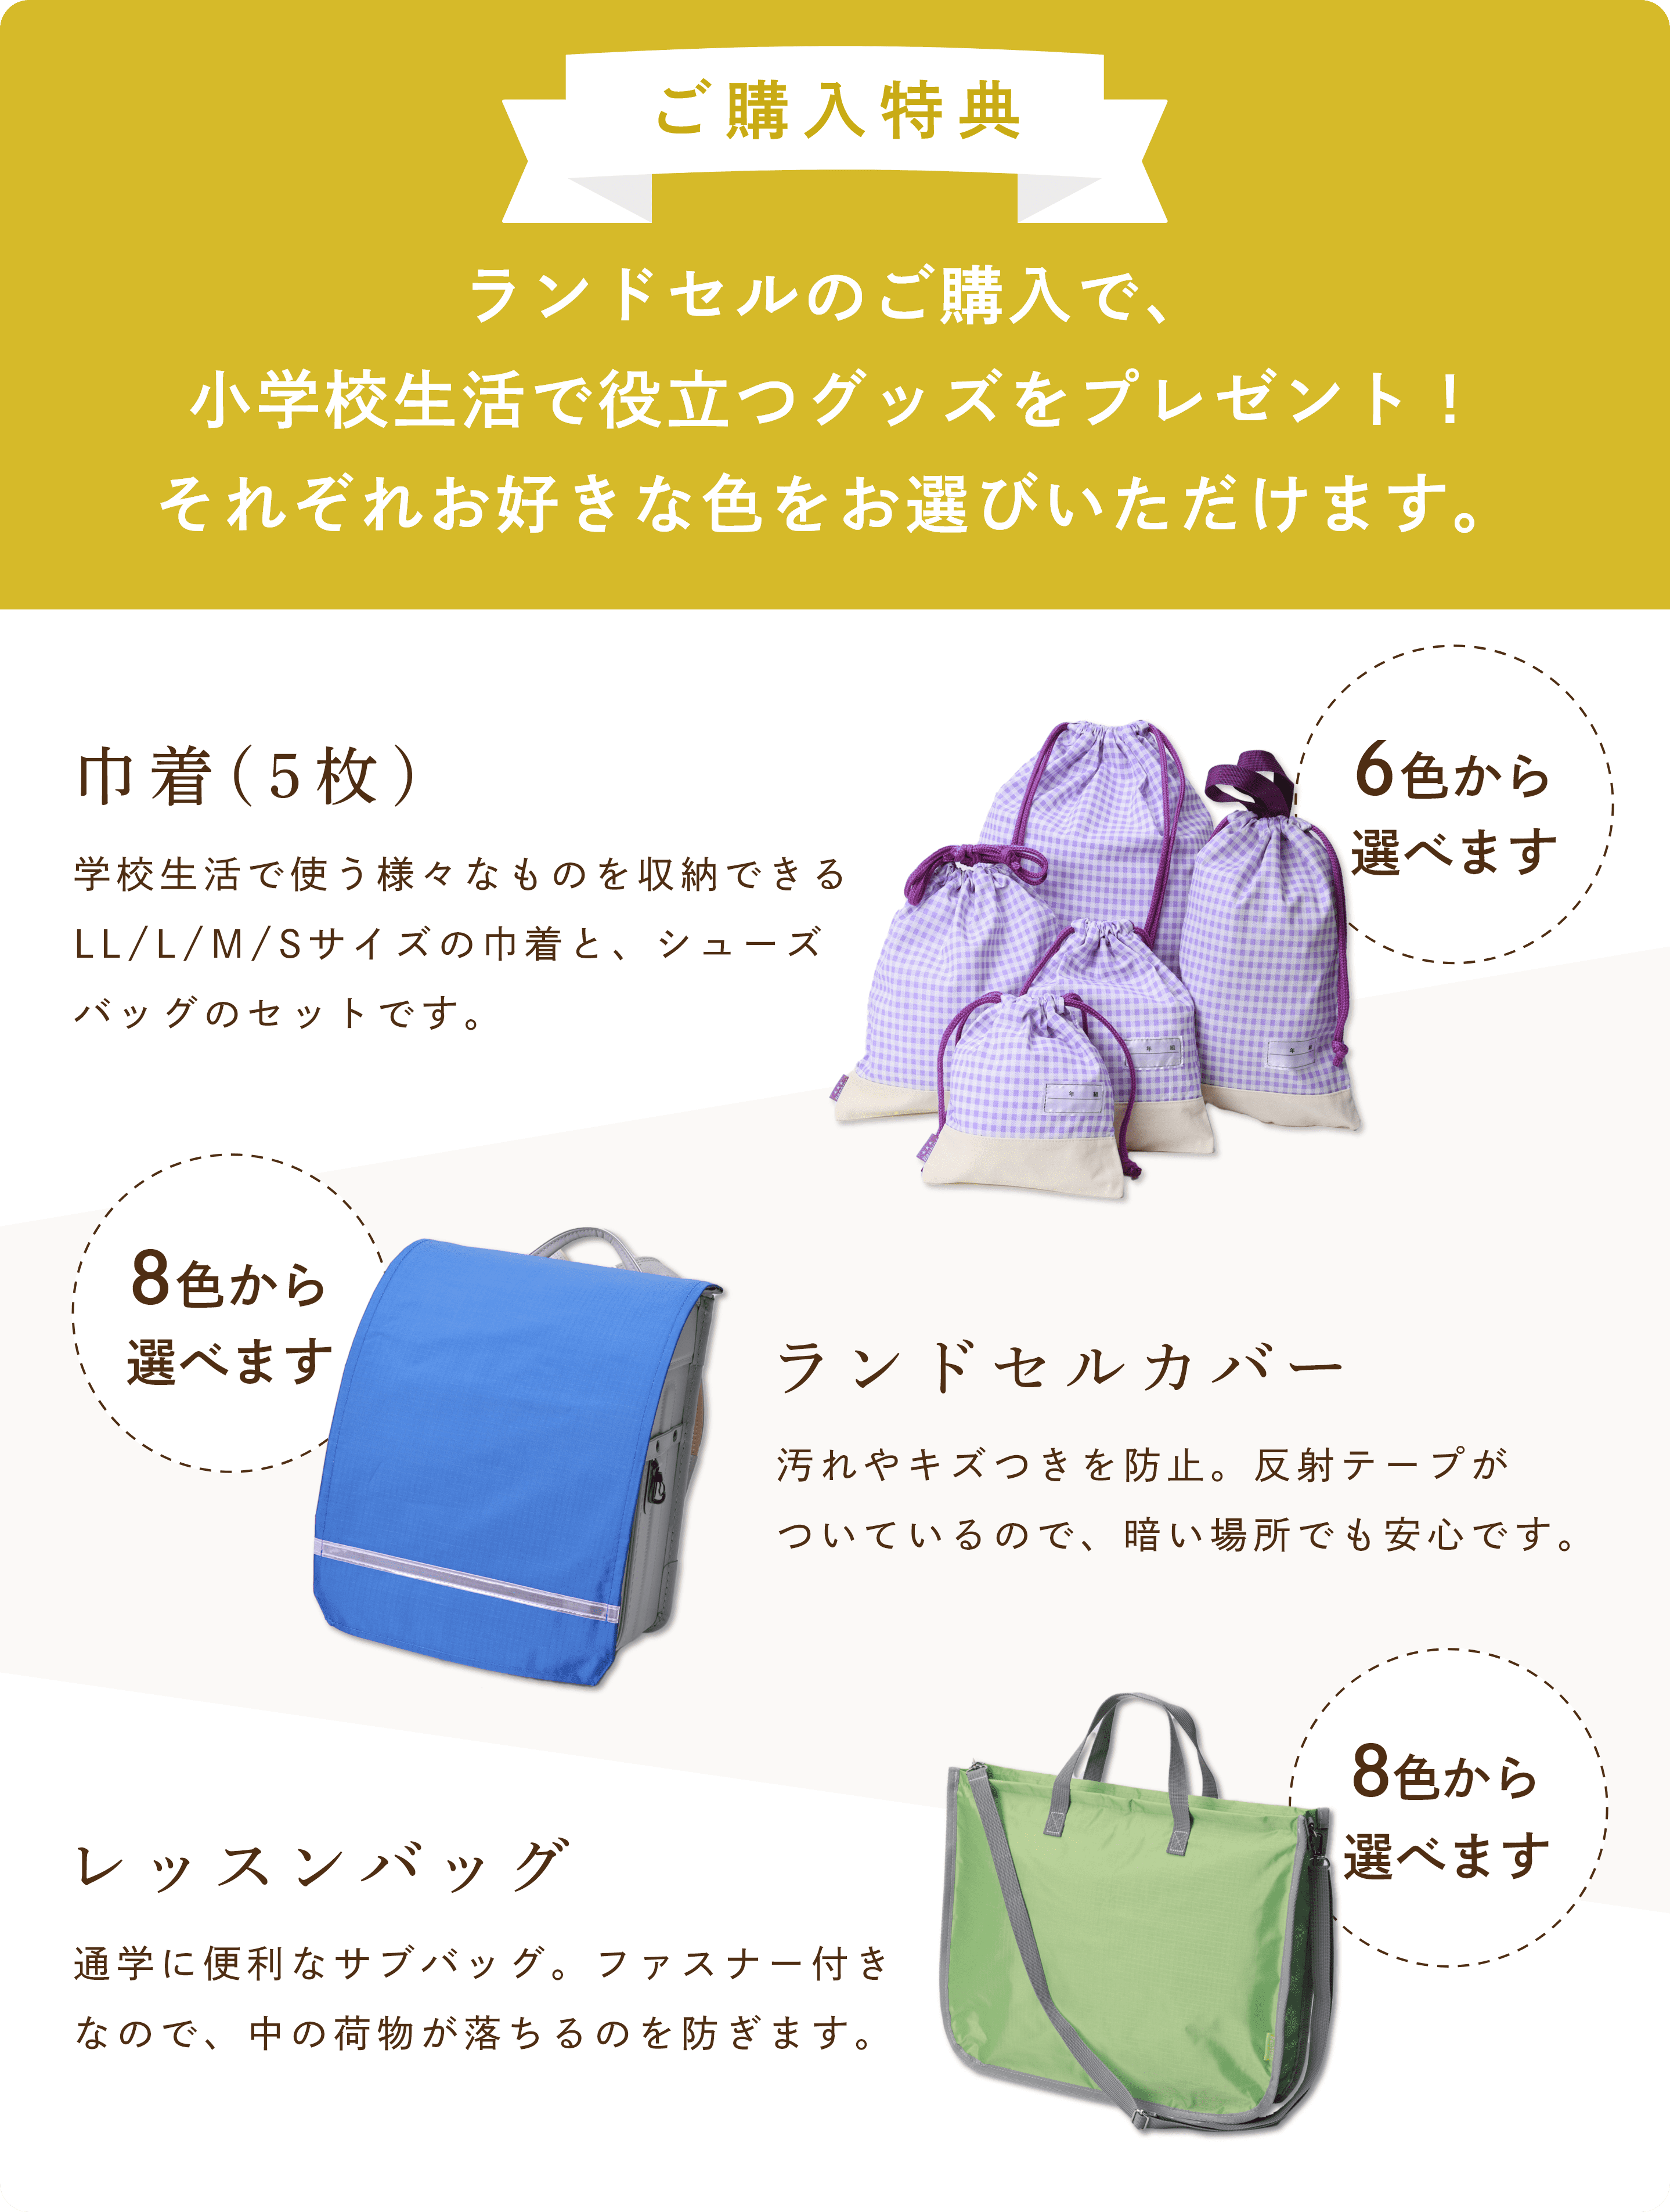 入学準備プレゼントの詳細